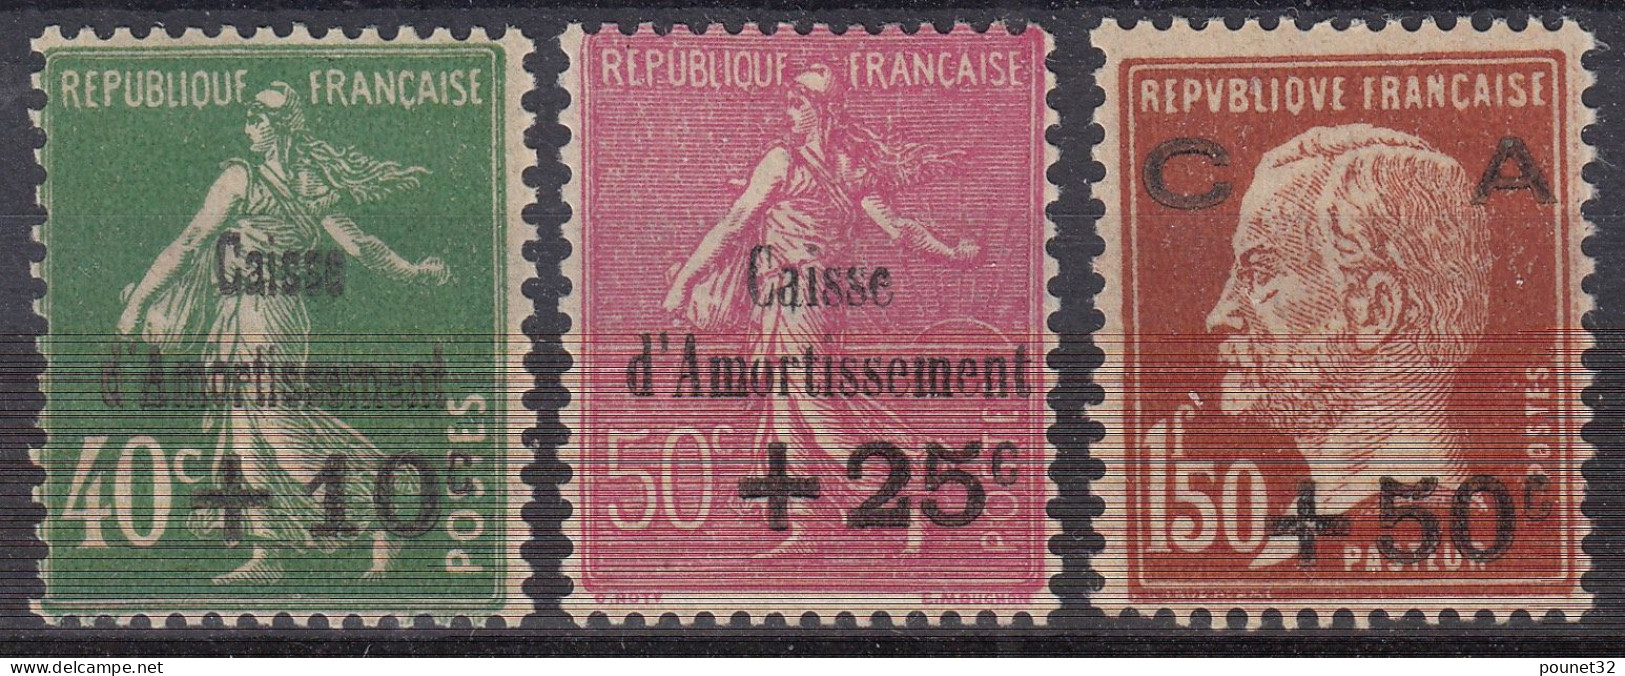 FRANCE SERIE CAISSE D'AMORTISSEMENT N° 253/255 NEUVE * GOMME TRACE DE CHARNIERE - 1927-31 Caisse D'Amortissement